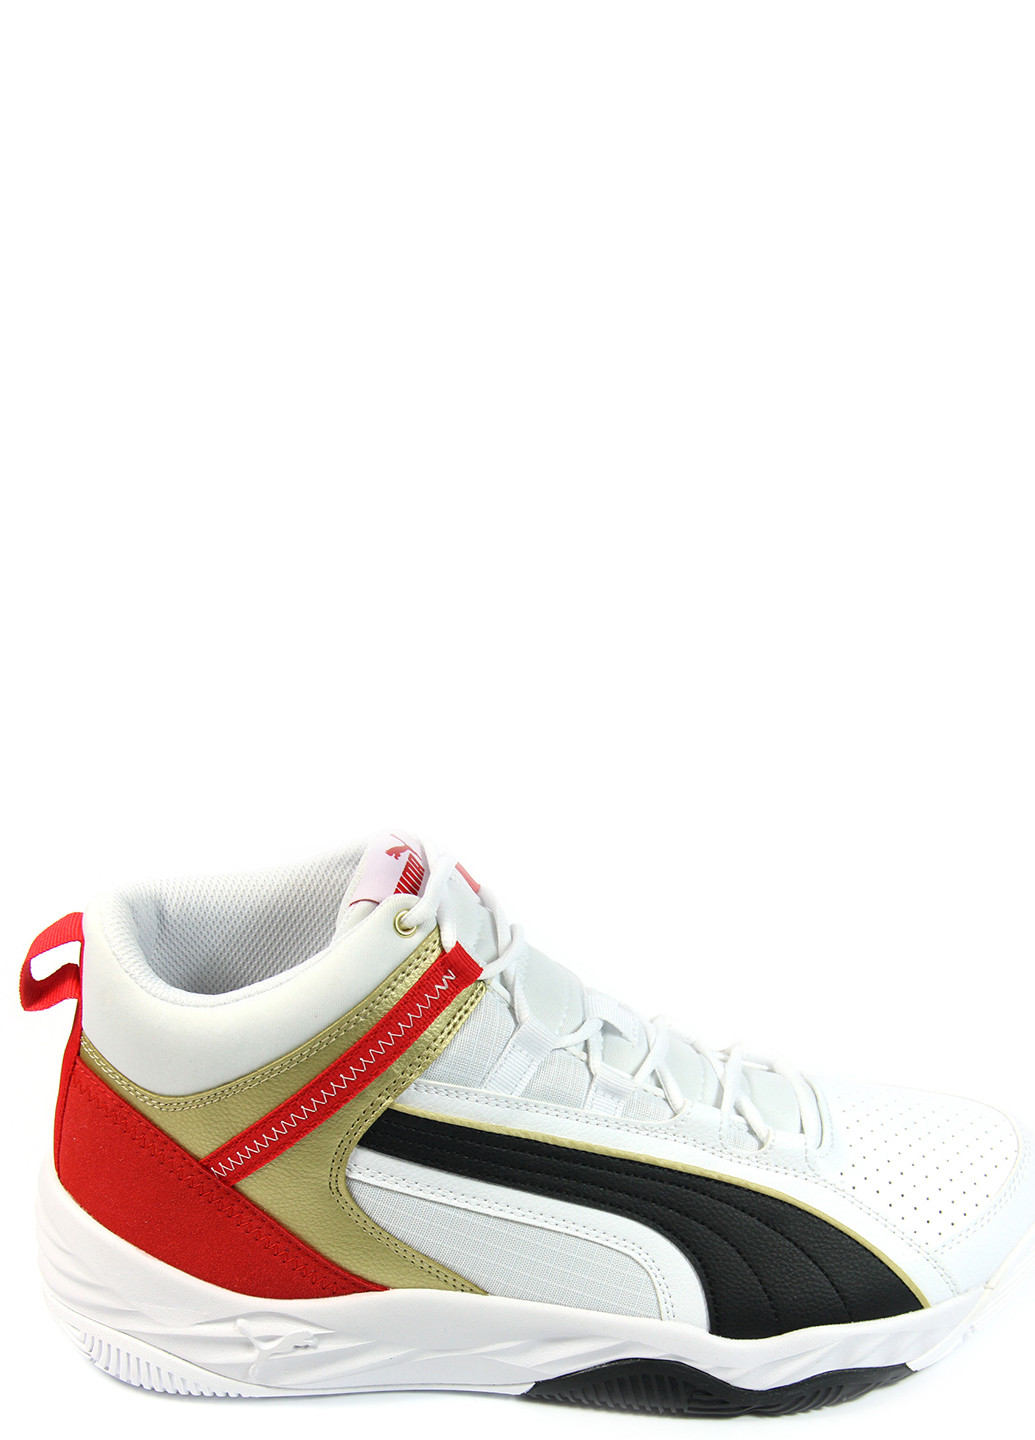 Цветные демисезонные мужские кроссовки rebound future evo 374899-08 Puma